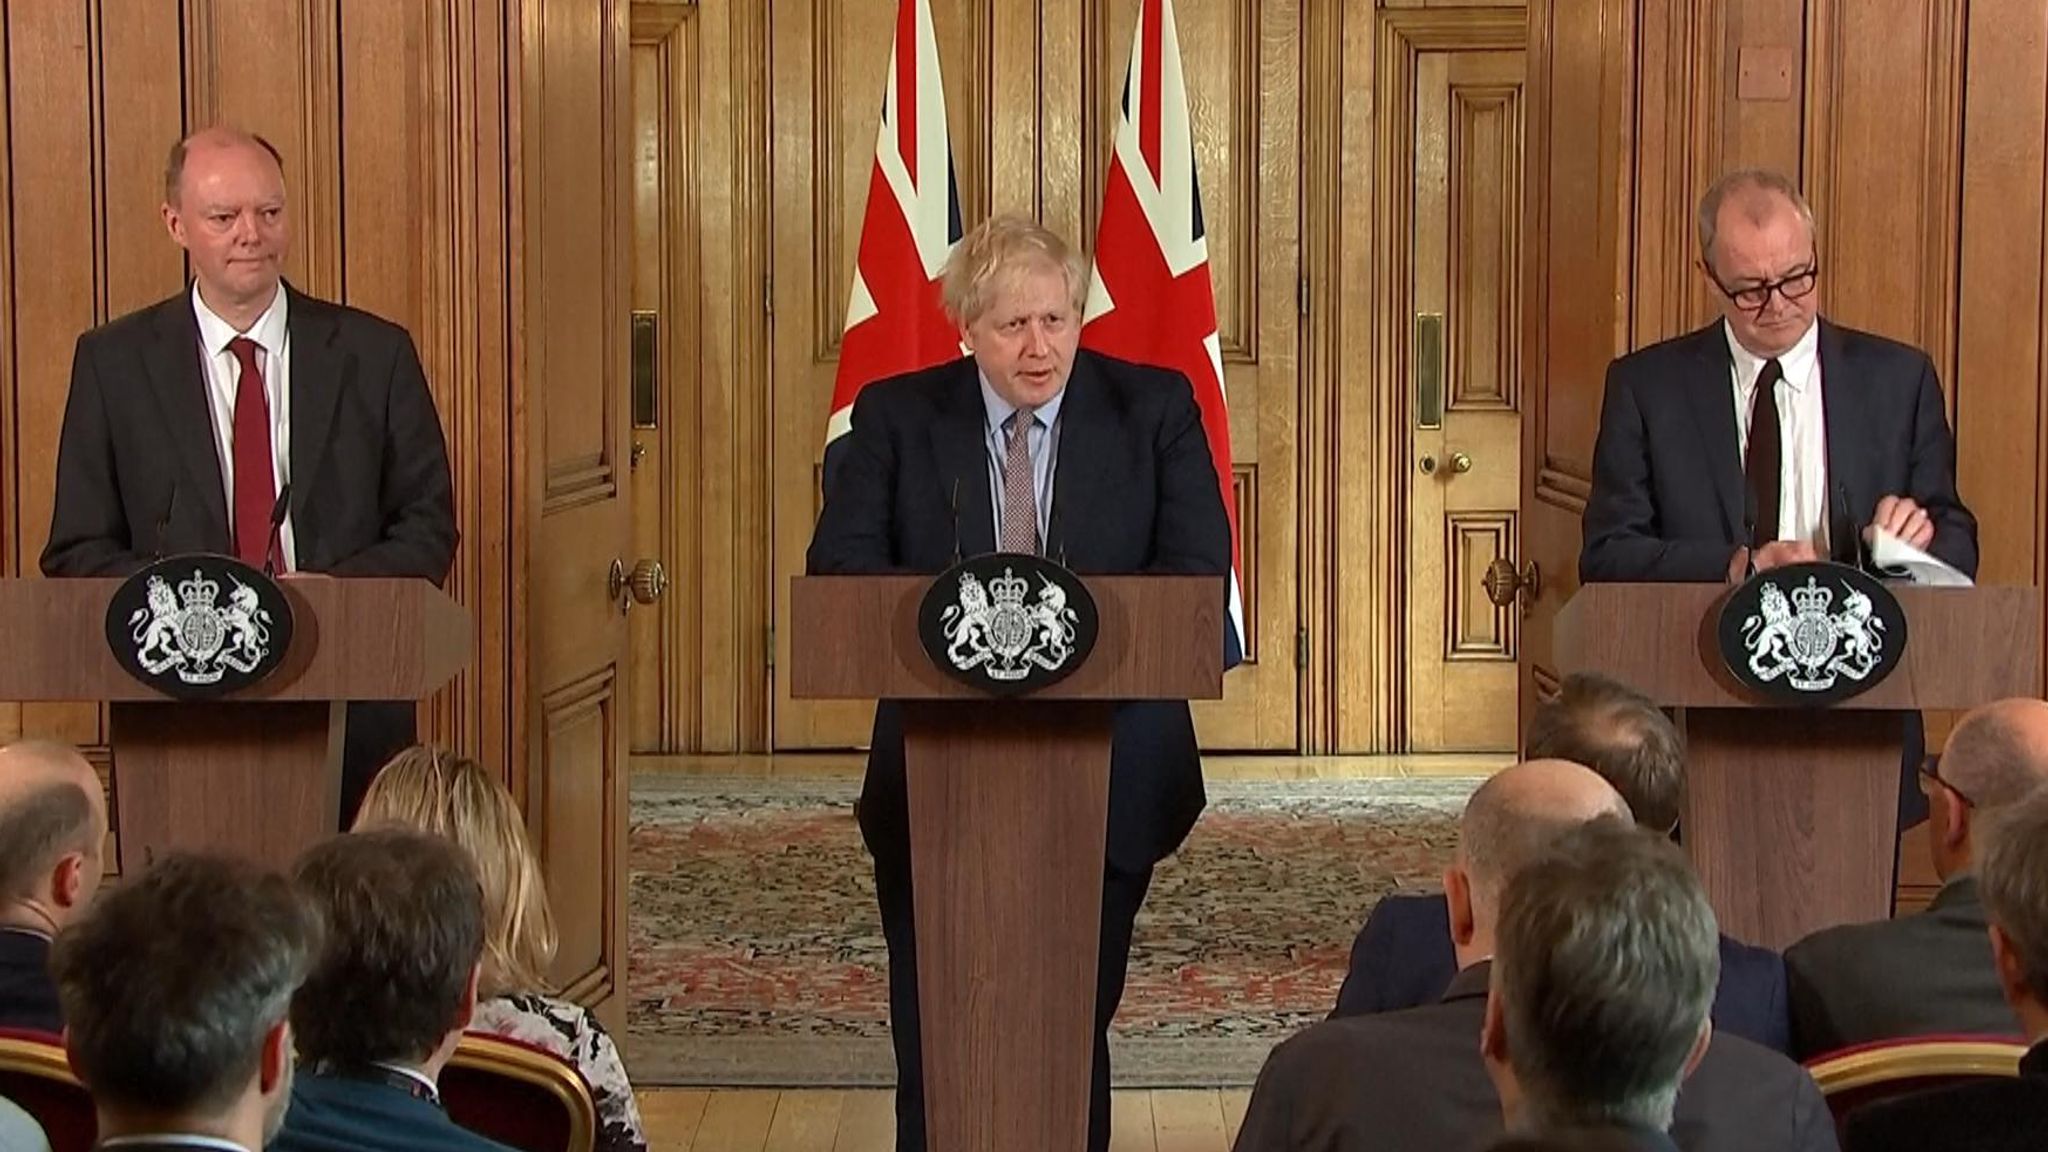 Περιορισμούς στις συναθροίσεις αλλά όχι απαγόρευση κυκλοφορίας ανακοίνωσε ο Βρετανός πρωθυπουργός Μπόρις Τζόνσον (upd)